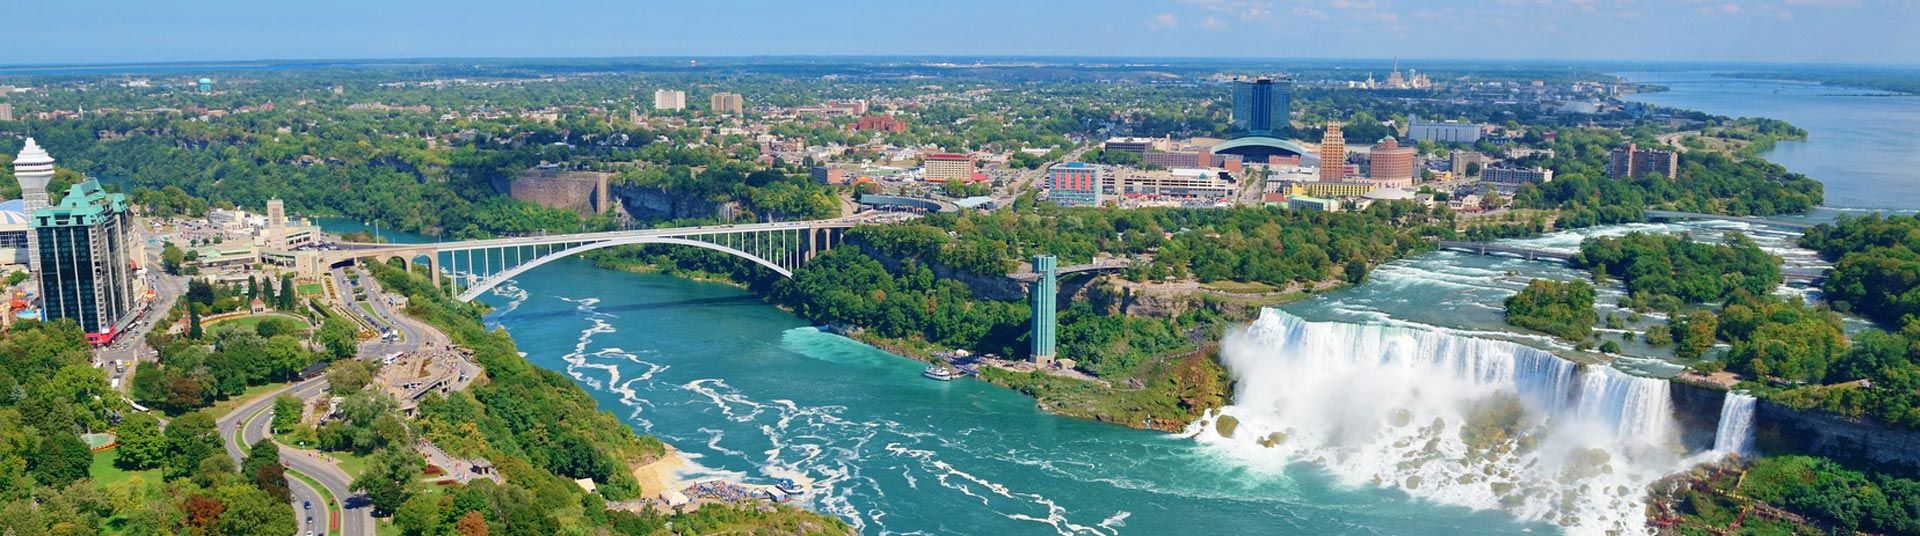 Niagara Falls Etats Unis